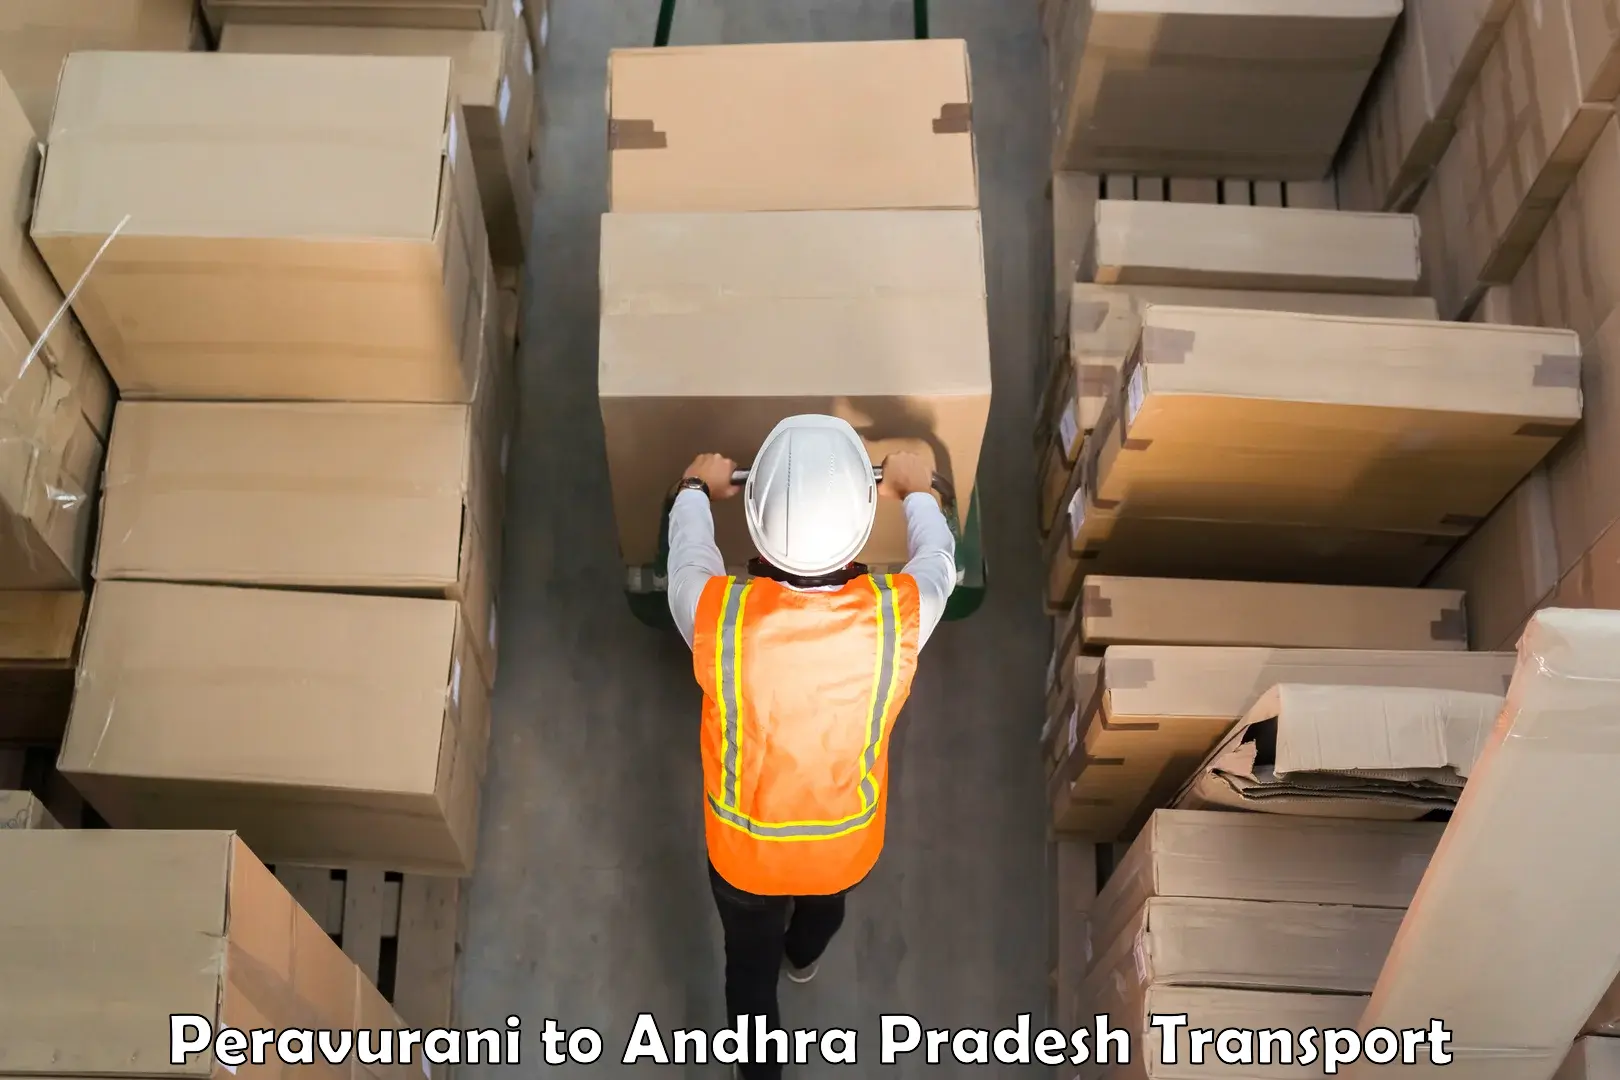 Furniture transport service Peravurani to Puttur Tirupati